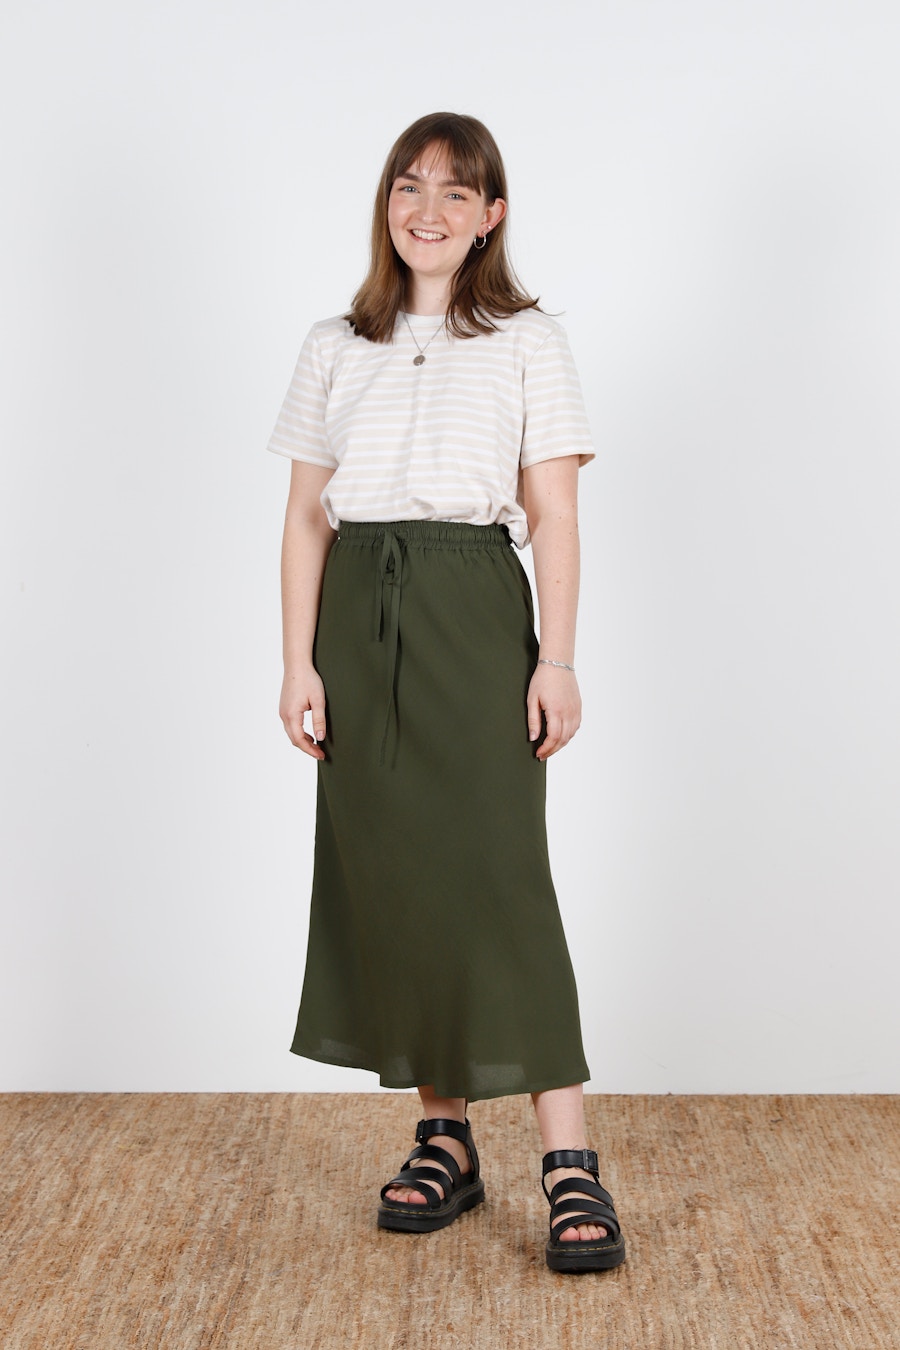 Main Fog Tee Soften Studio Clo Skirt The Fabric Store Blog